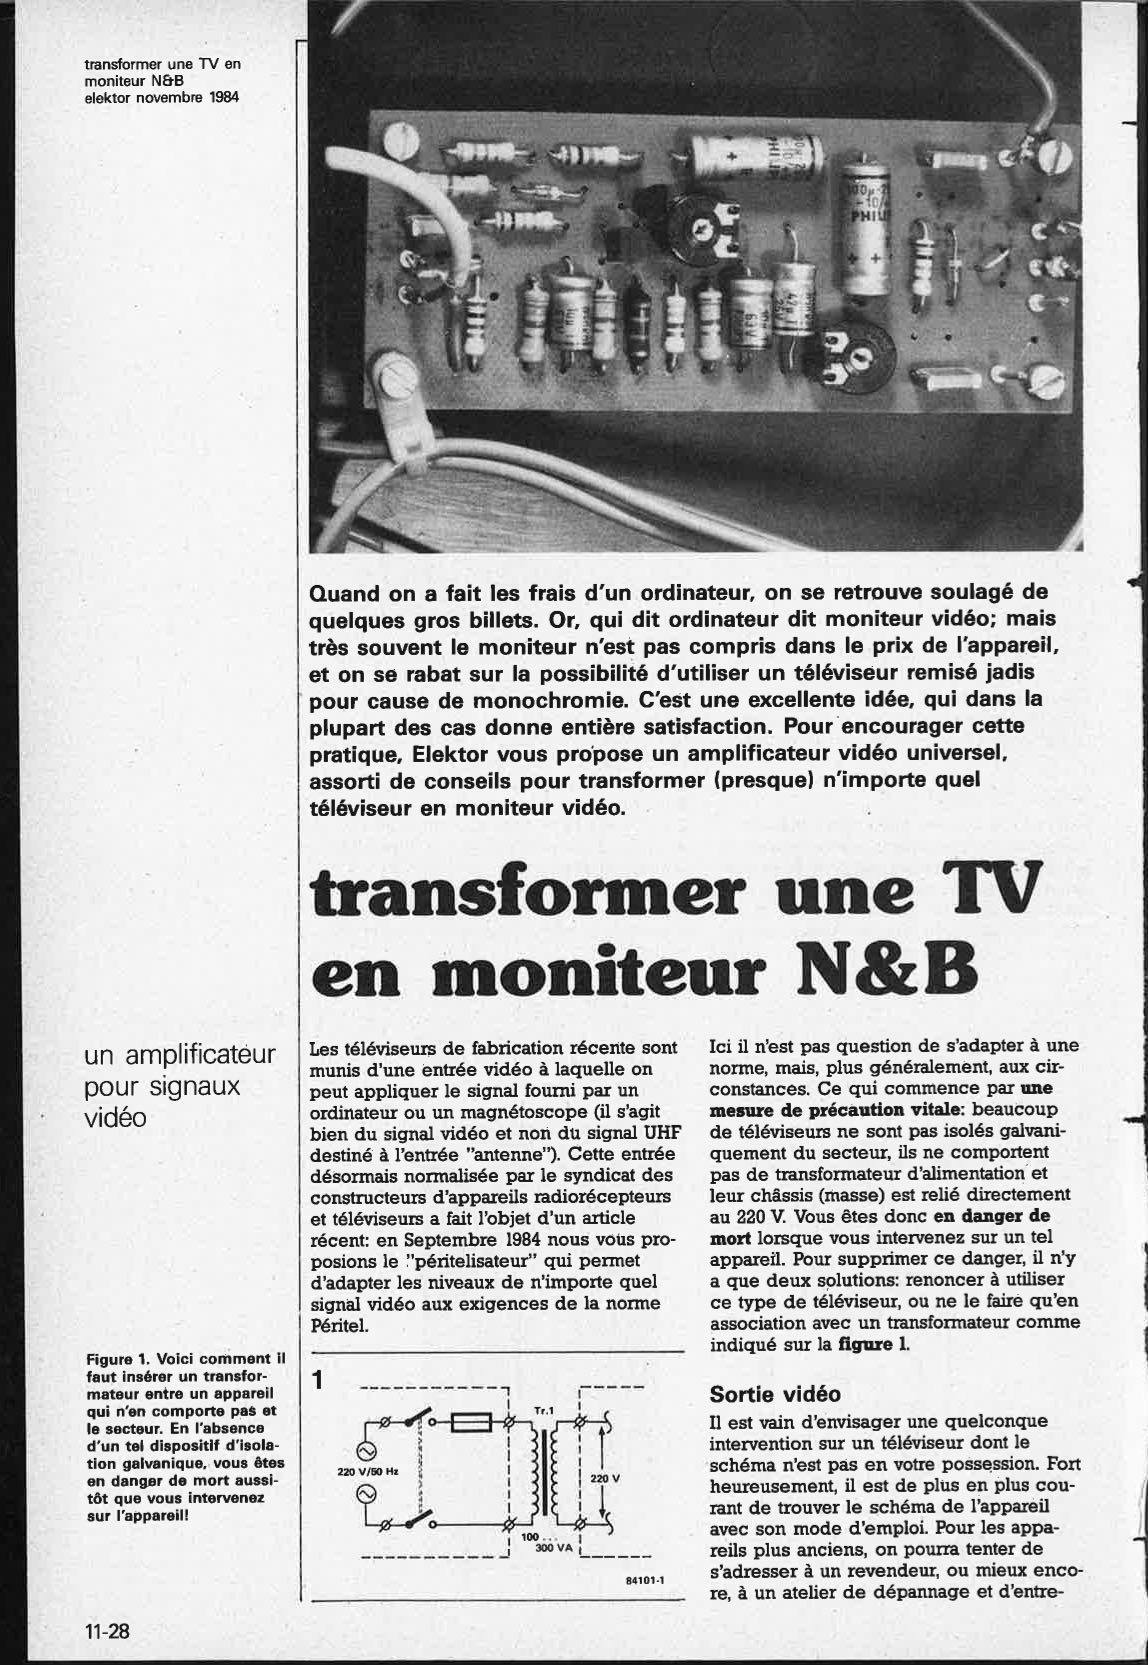 transformer une TV en moniteur N&B